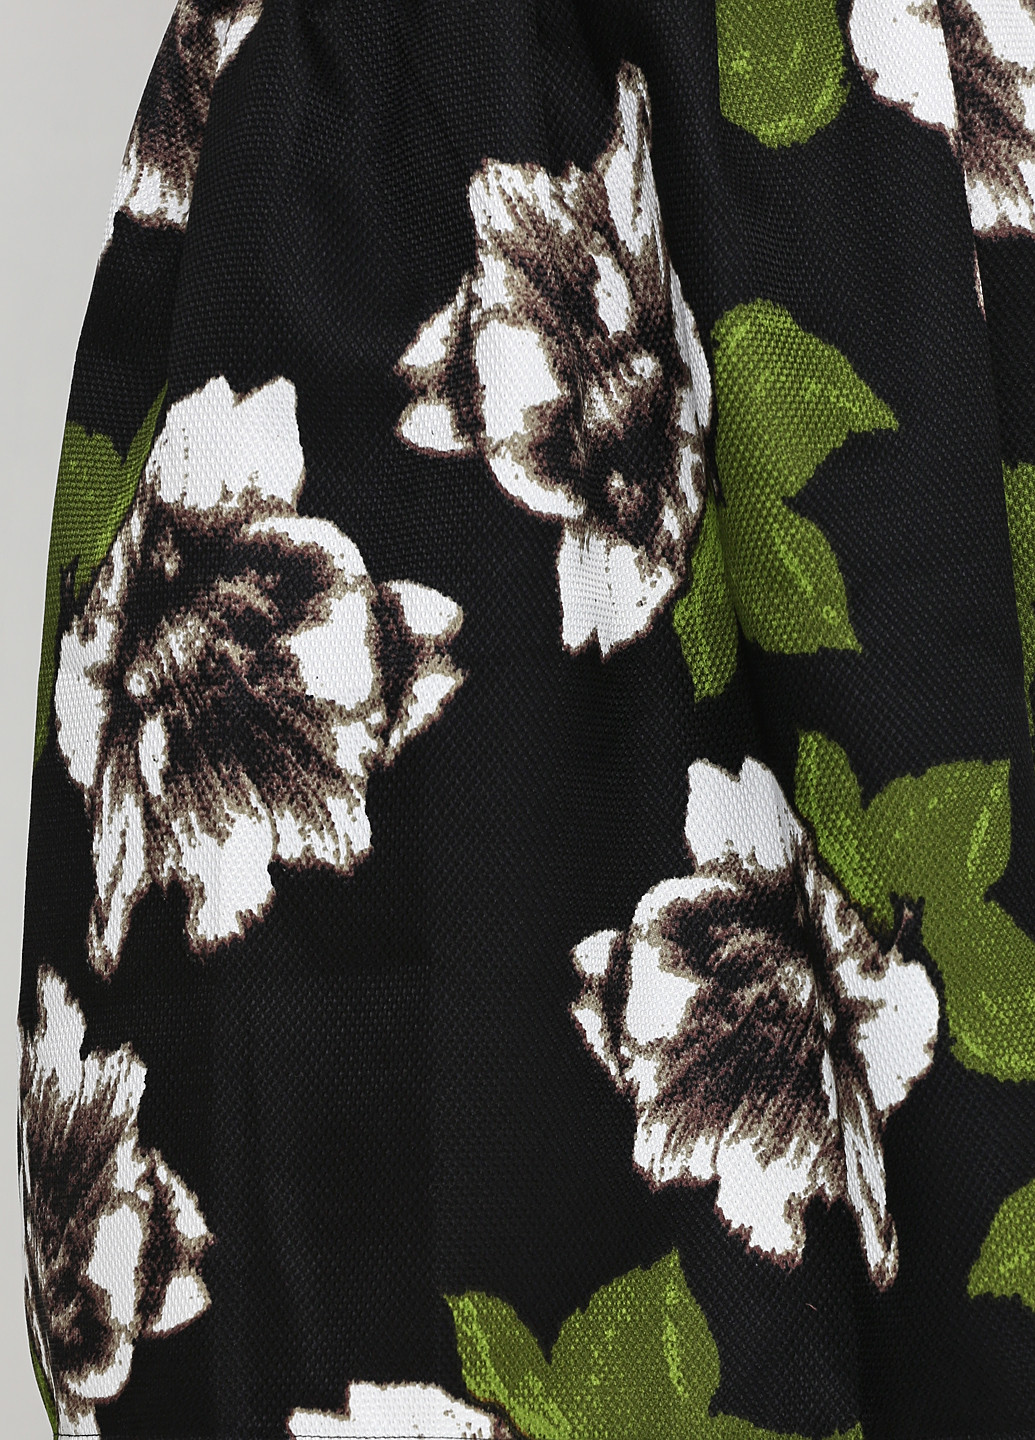 Черная кэжуал цветочной расцветки юбка Moni&co колокол